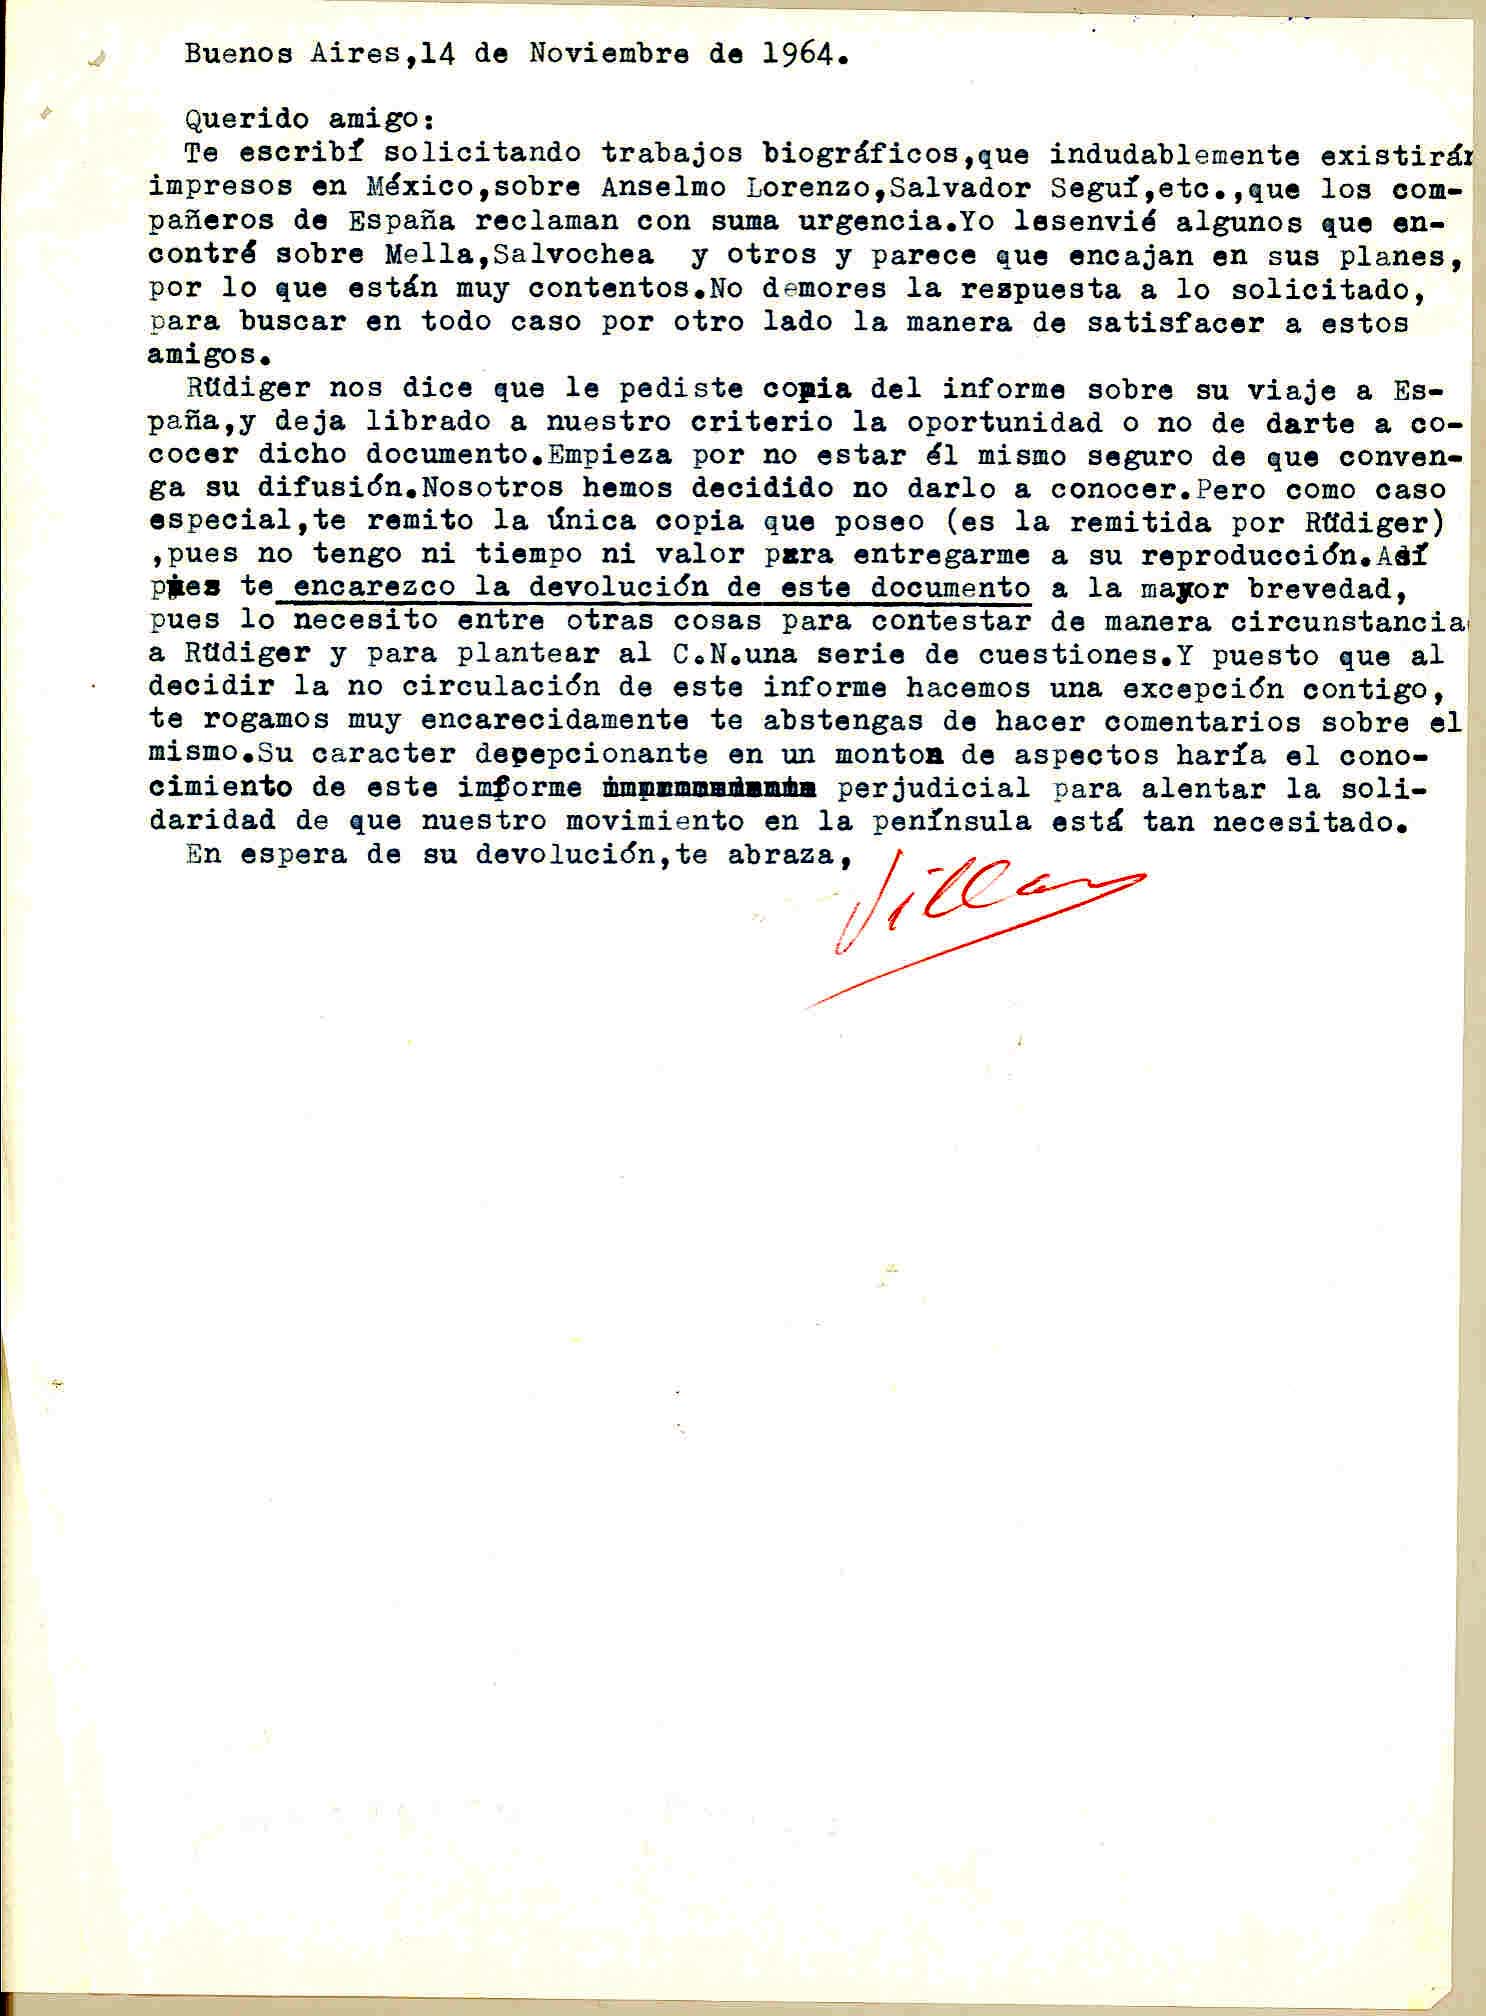 Carta de Manuel Villar con la que adjuntó copia del informe de Rüdiger sobre su viaje a España y realiza comentarios sobre éste.